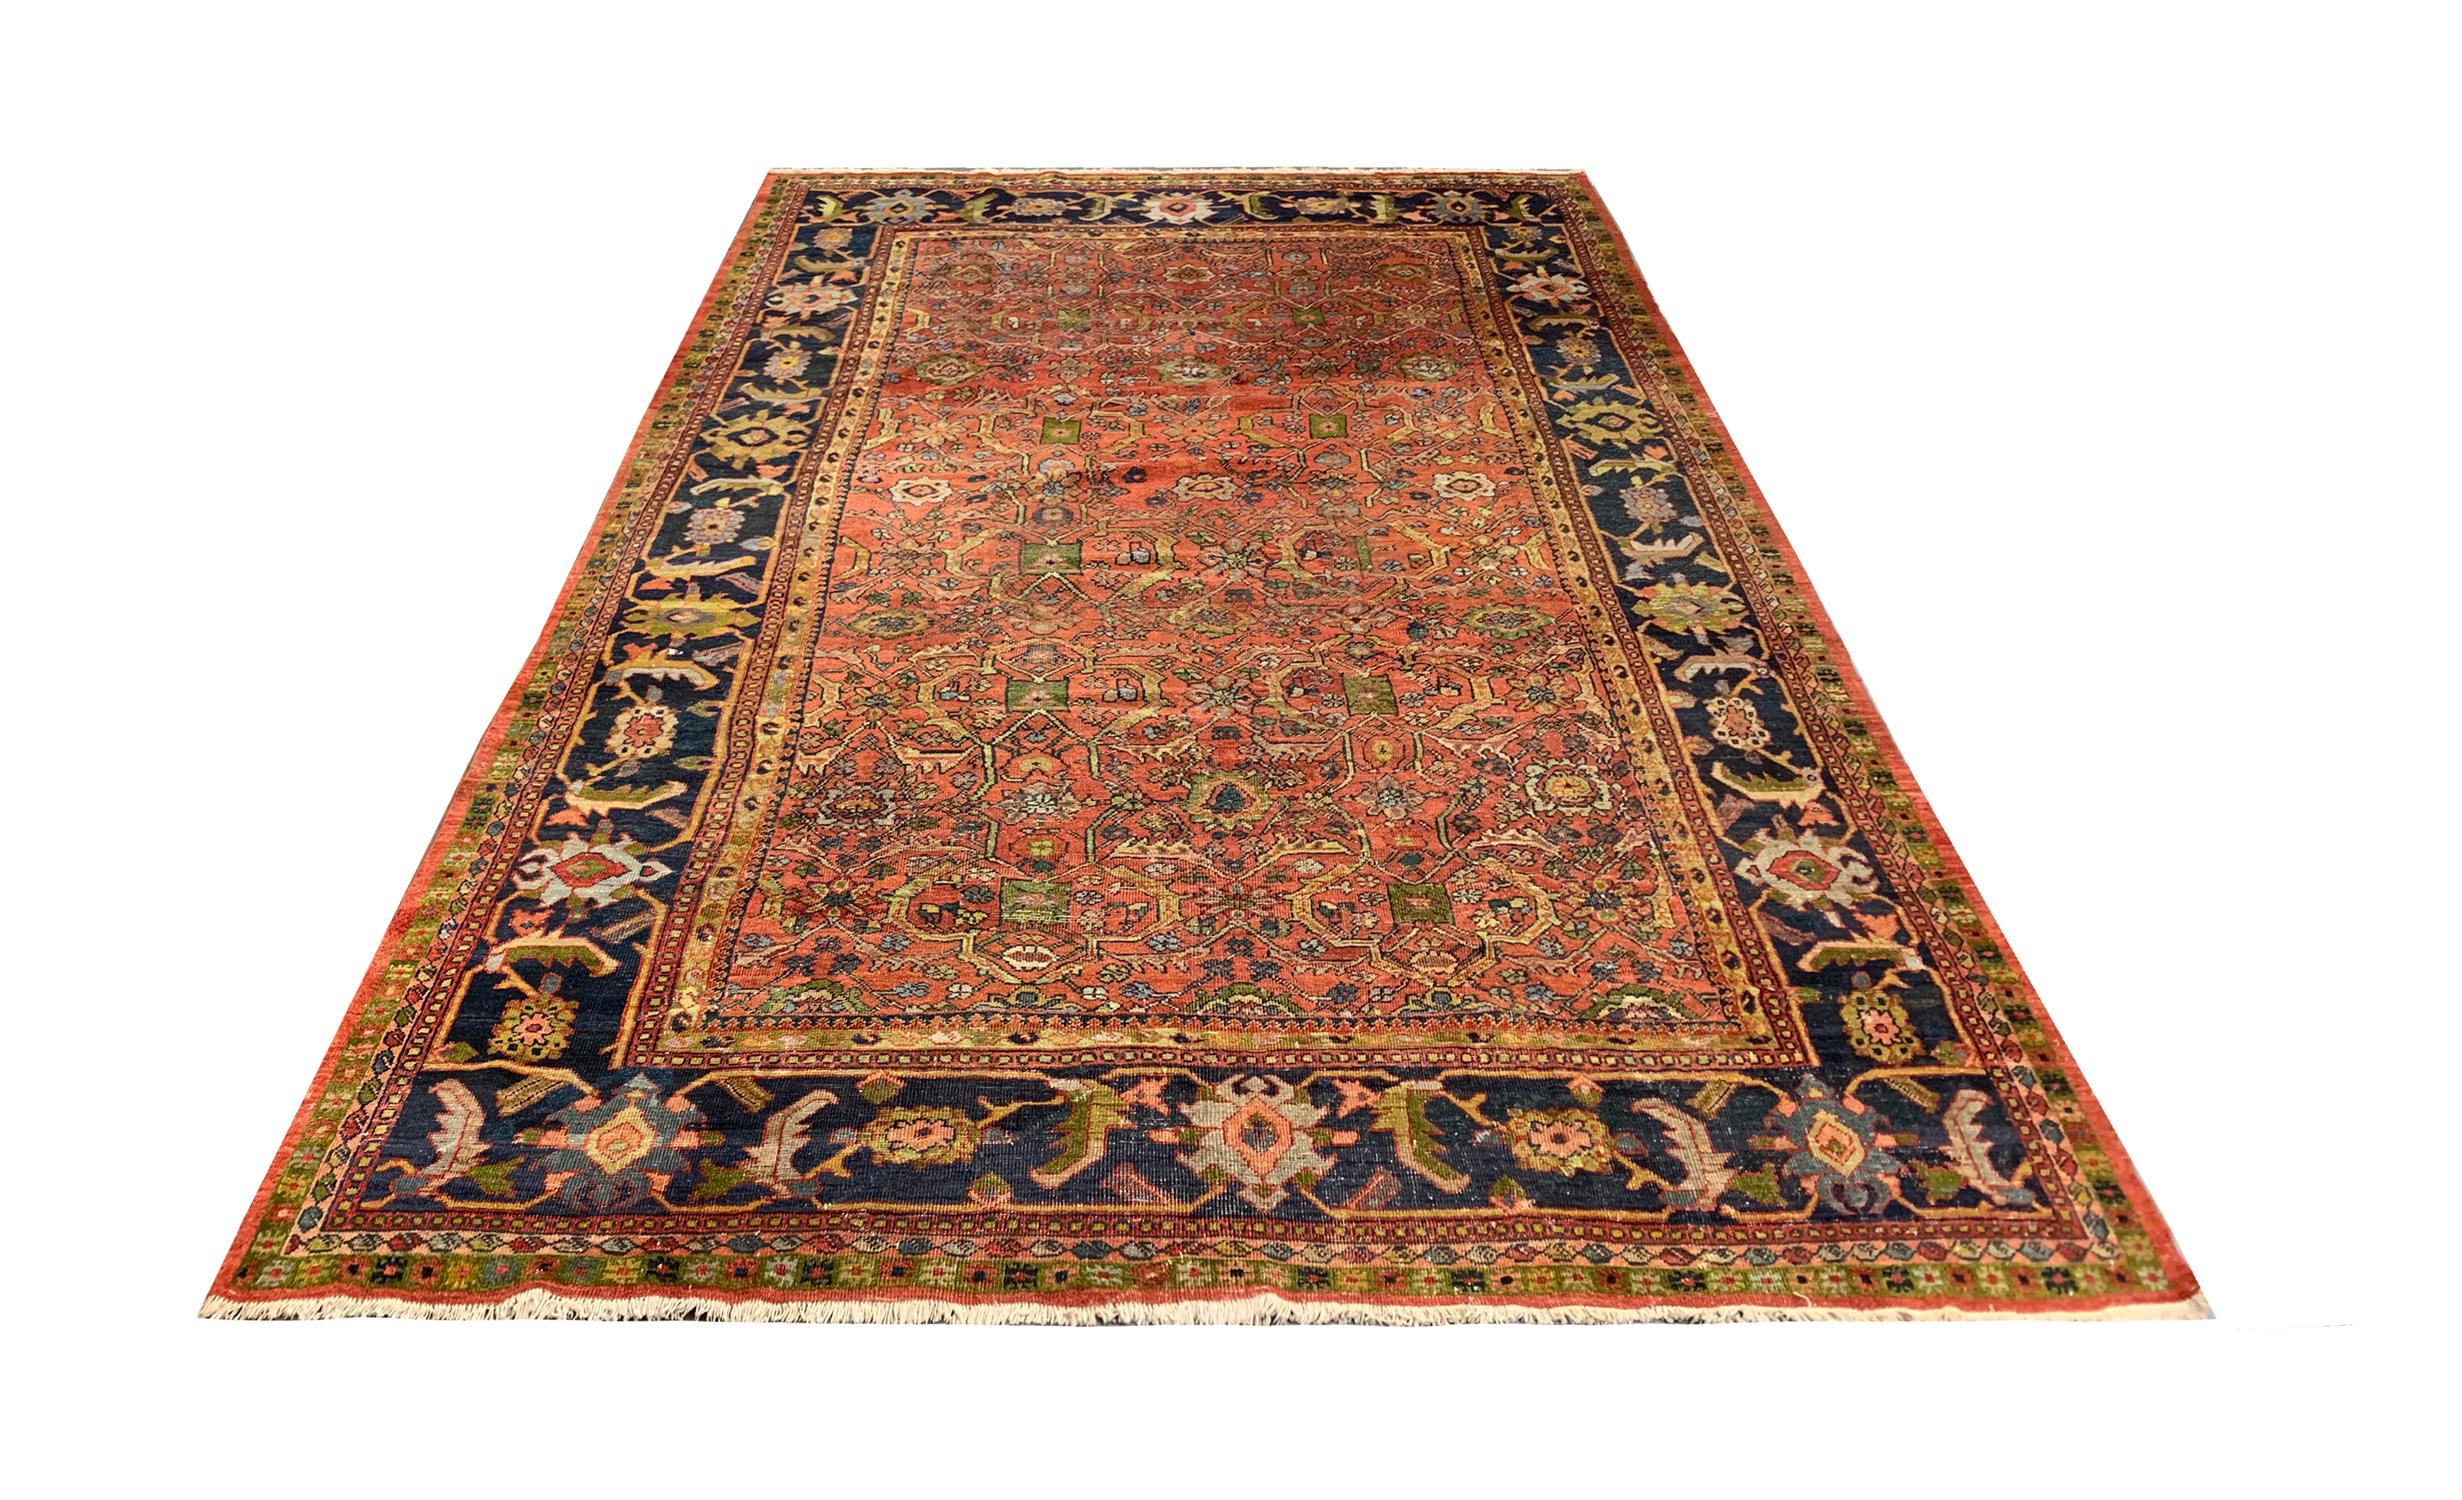 Les tapis caucasiens faits à la main sont parmi les plus recherchés parmi les tapis rustiques en raison de leur esthétique décorative avec des variations uniques et spatiales de motifs et de bordures décoratives. Cette pièce a été tissée à la main